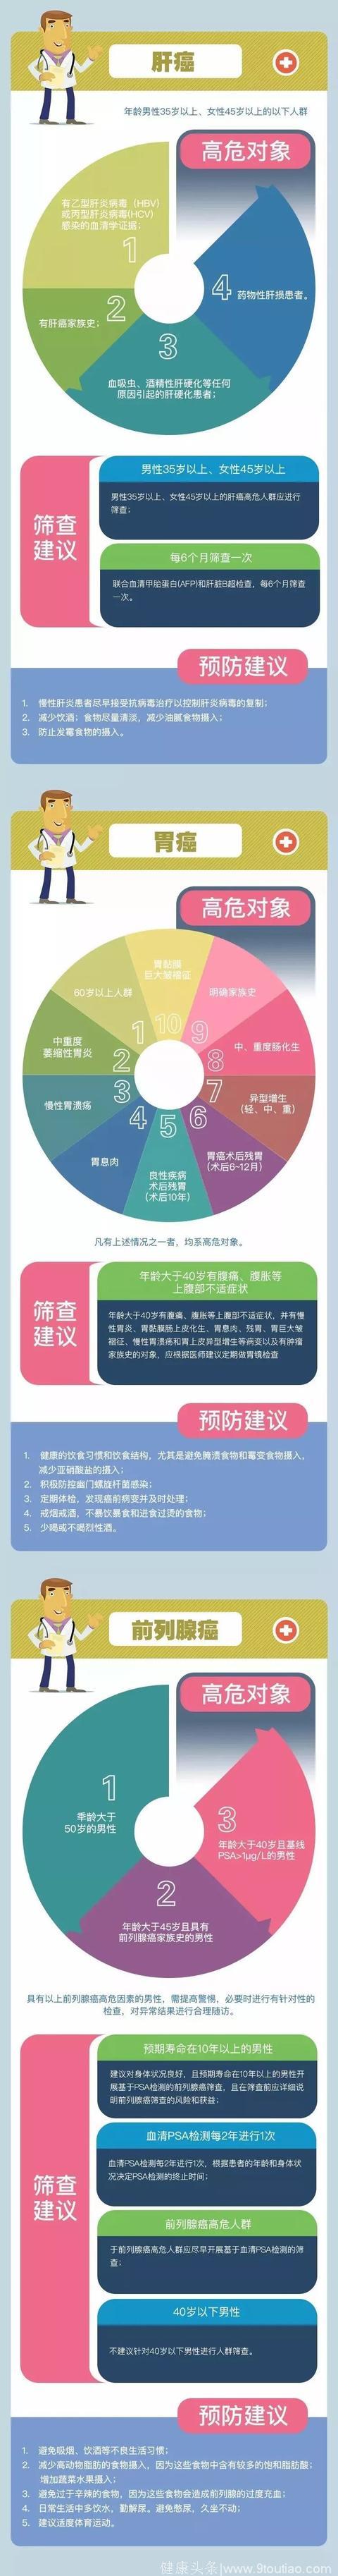 国人7大高发癌症怎么防？如何筛？上海抗癌协会给出权威指南！